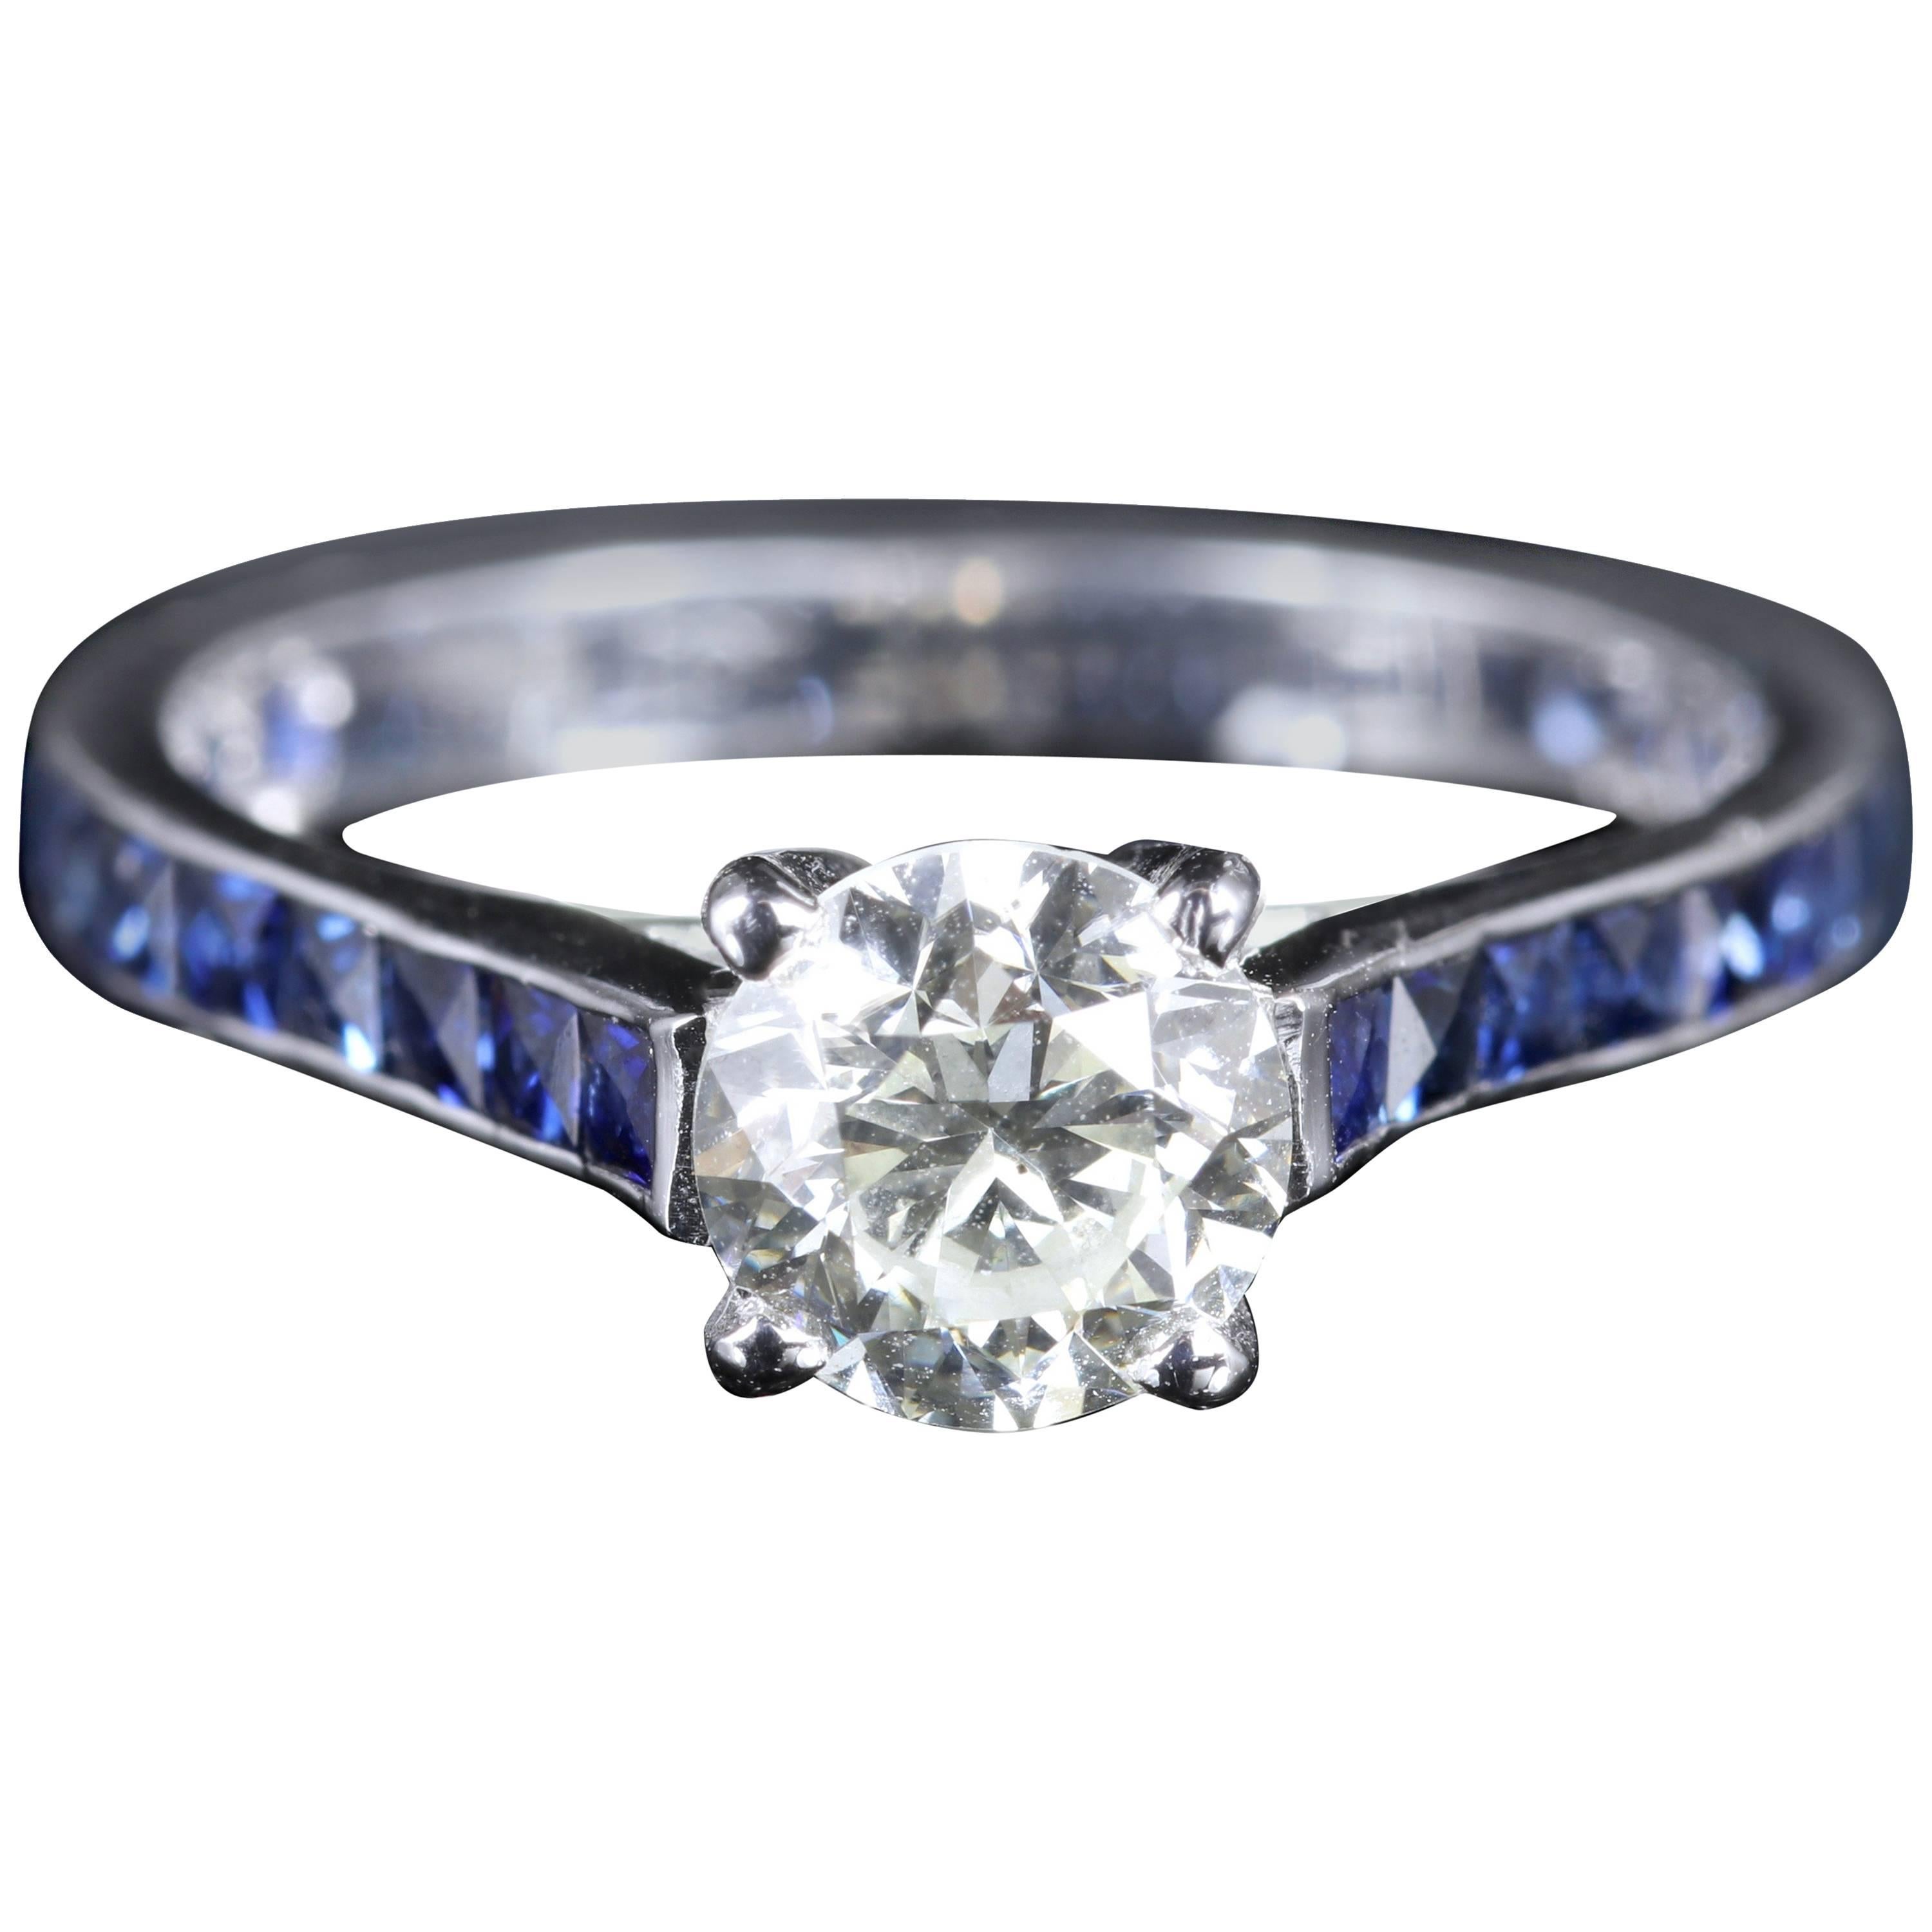 Antique Edwardian Diamond Engagement Ring Sapphire Shoulders